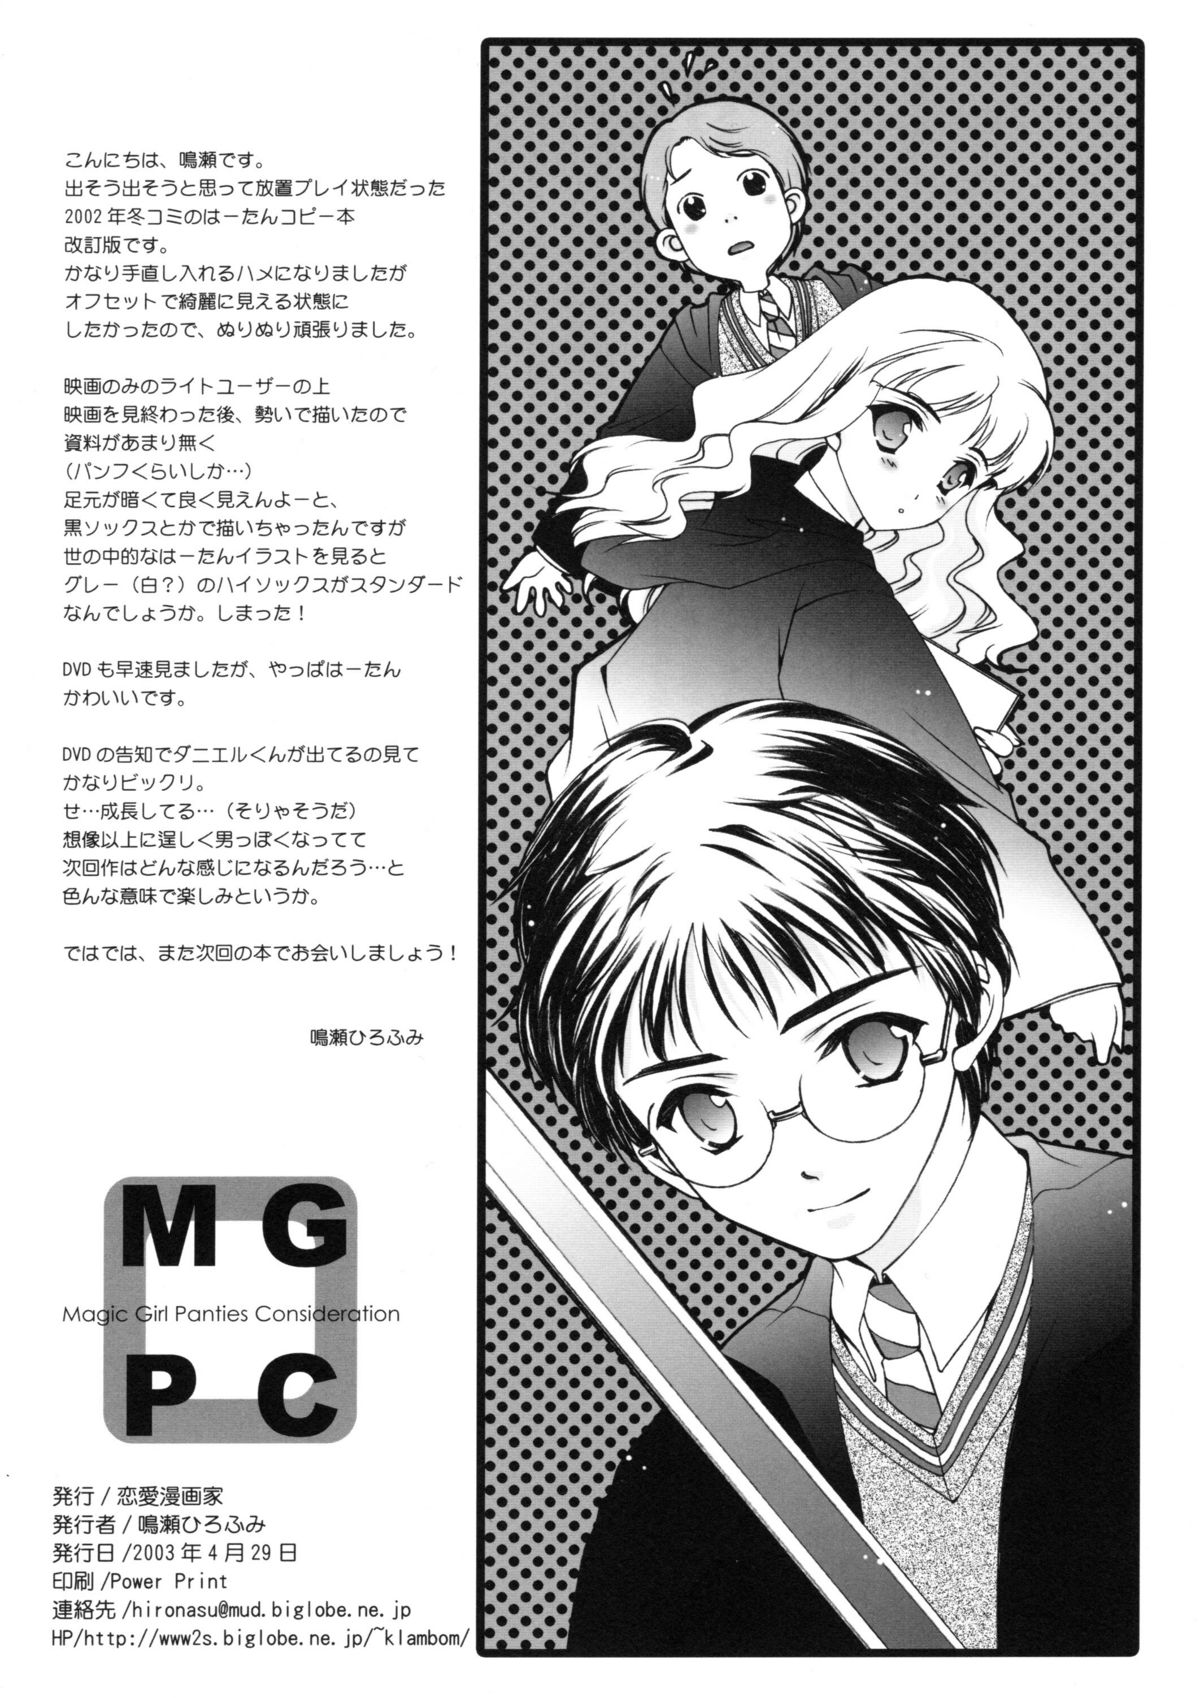 (CR33) [Renai Mangaka (Naruse Hirofumi)] MGPC - Magic Girl Panties Consideration (Harry Potter) page 9 full